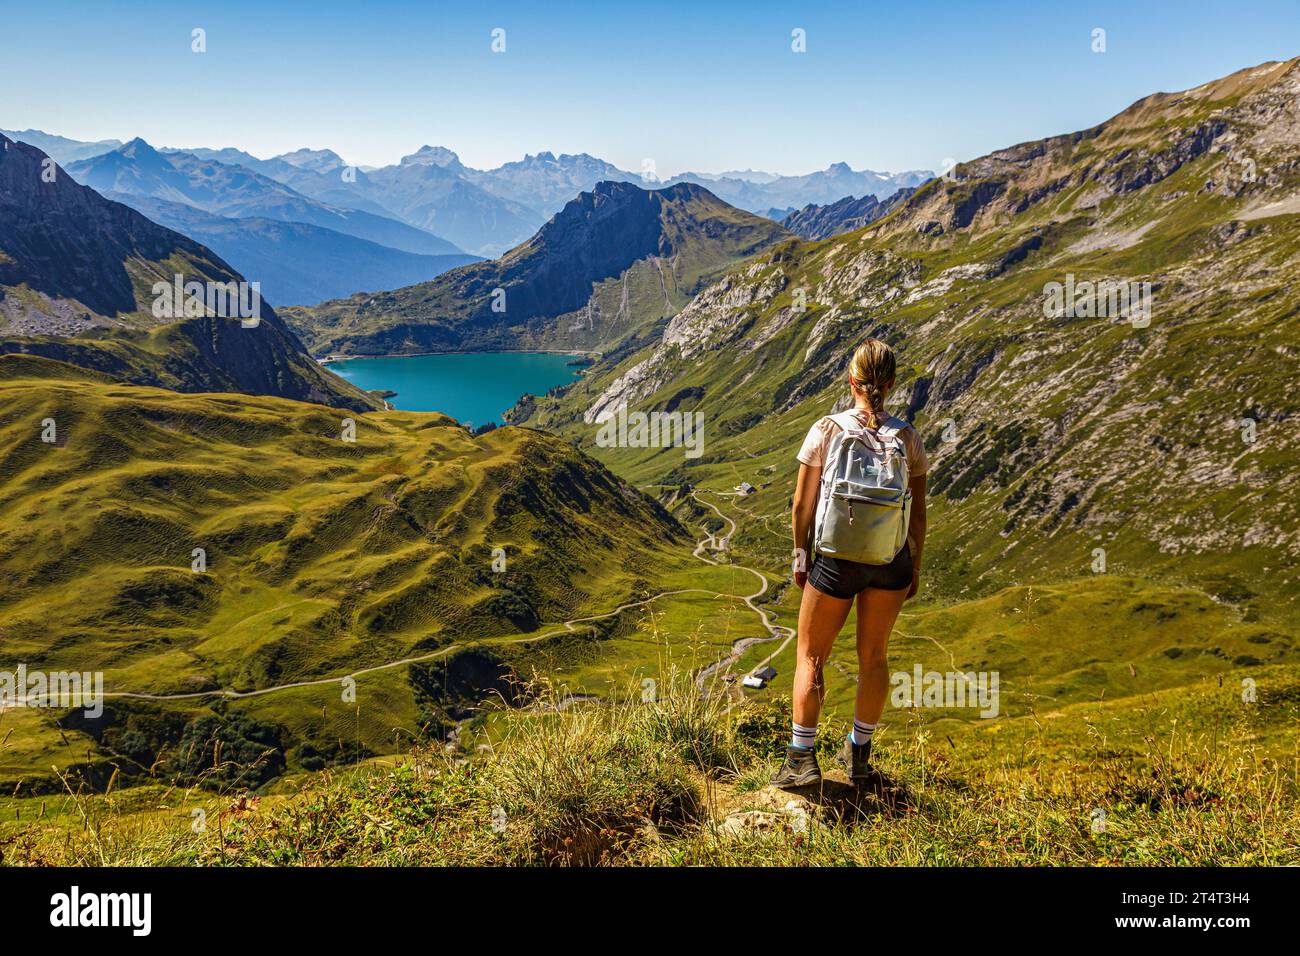 Eine junge Frau steht an einem Wanderweg auf einem Berg und schaut auf den Spullersee in Vorarlberg Lech Östereich Banque D'Images